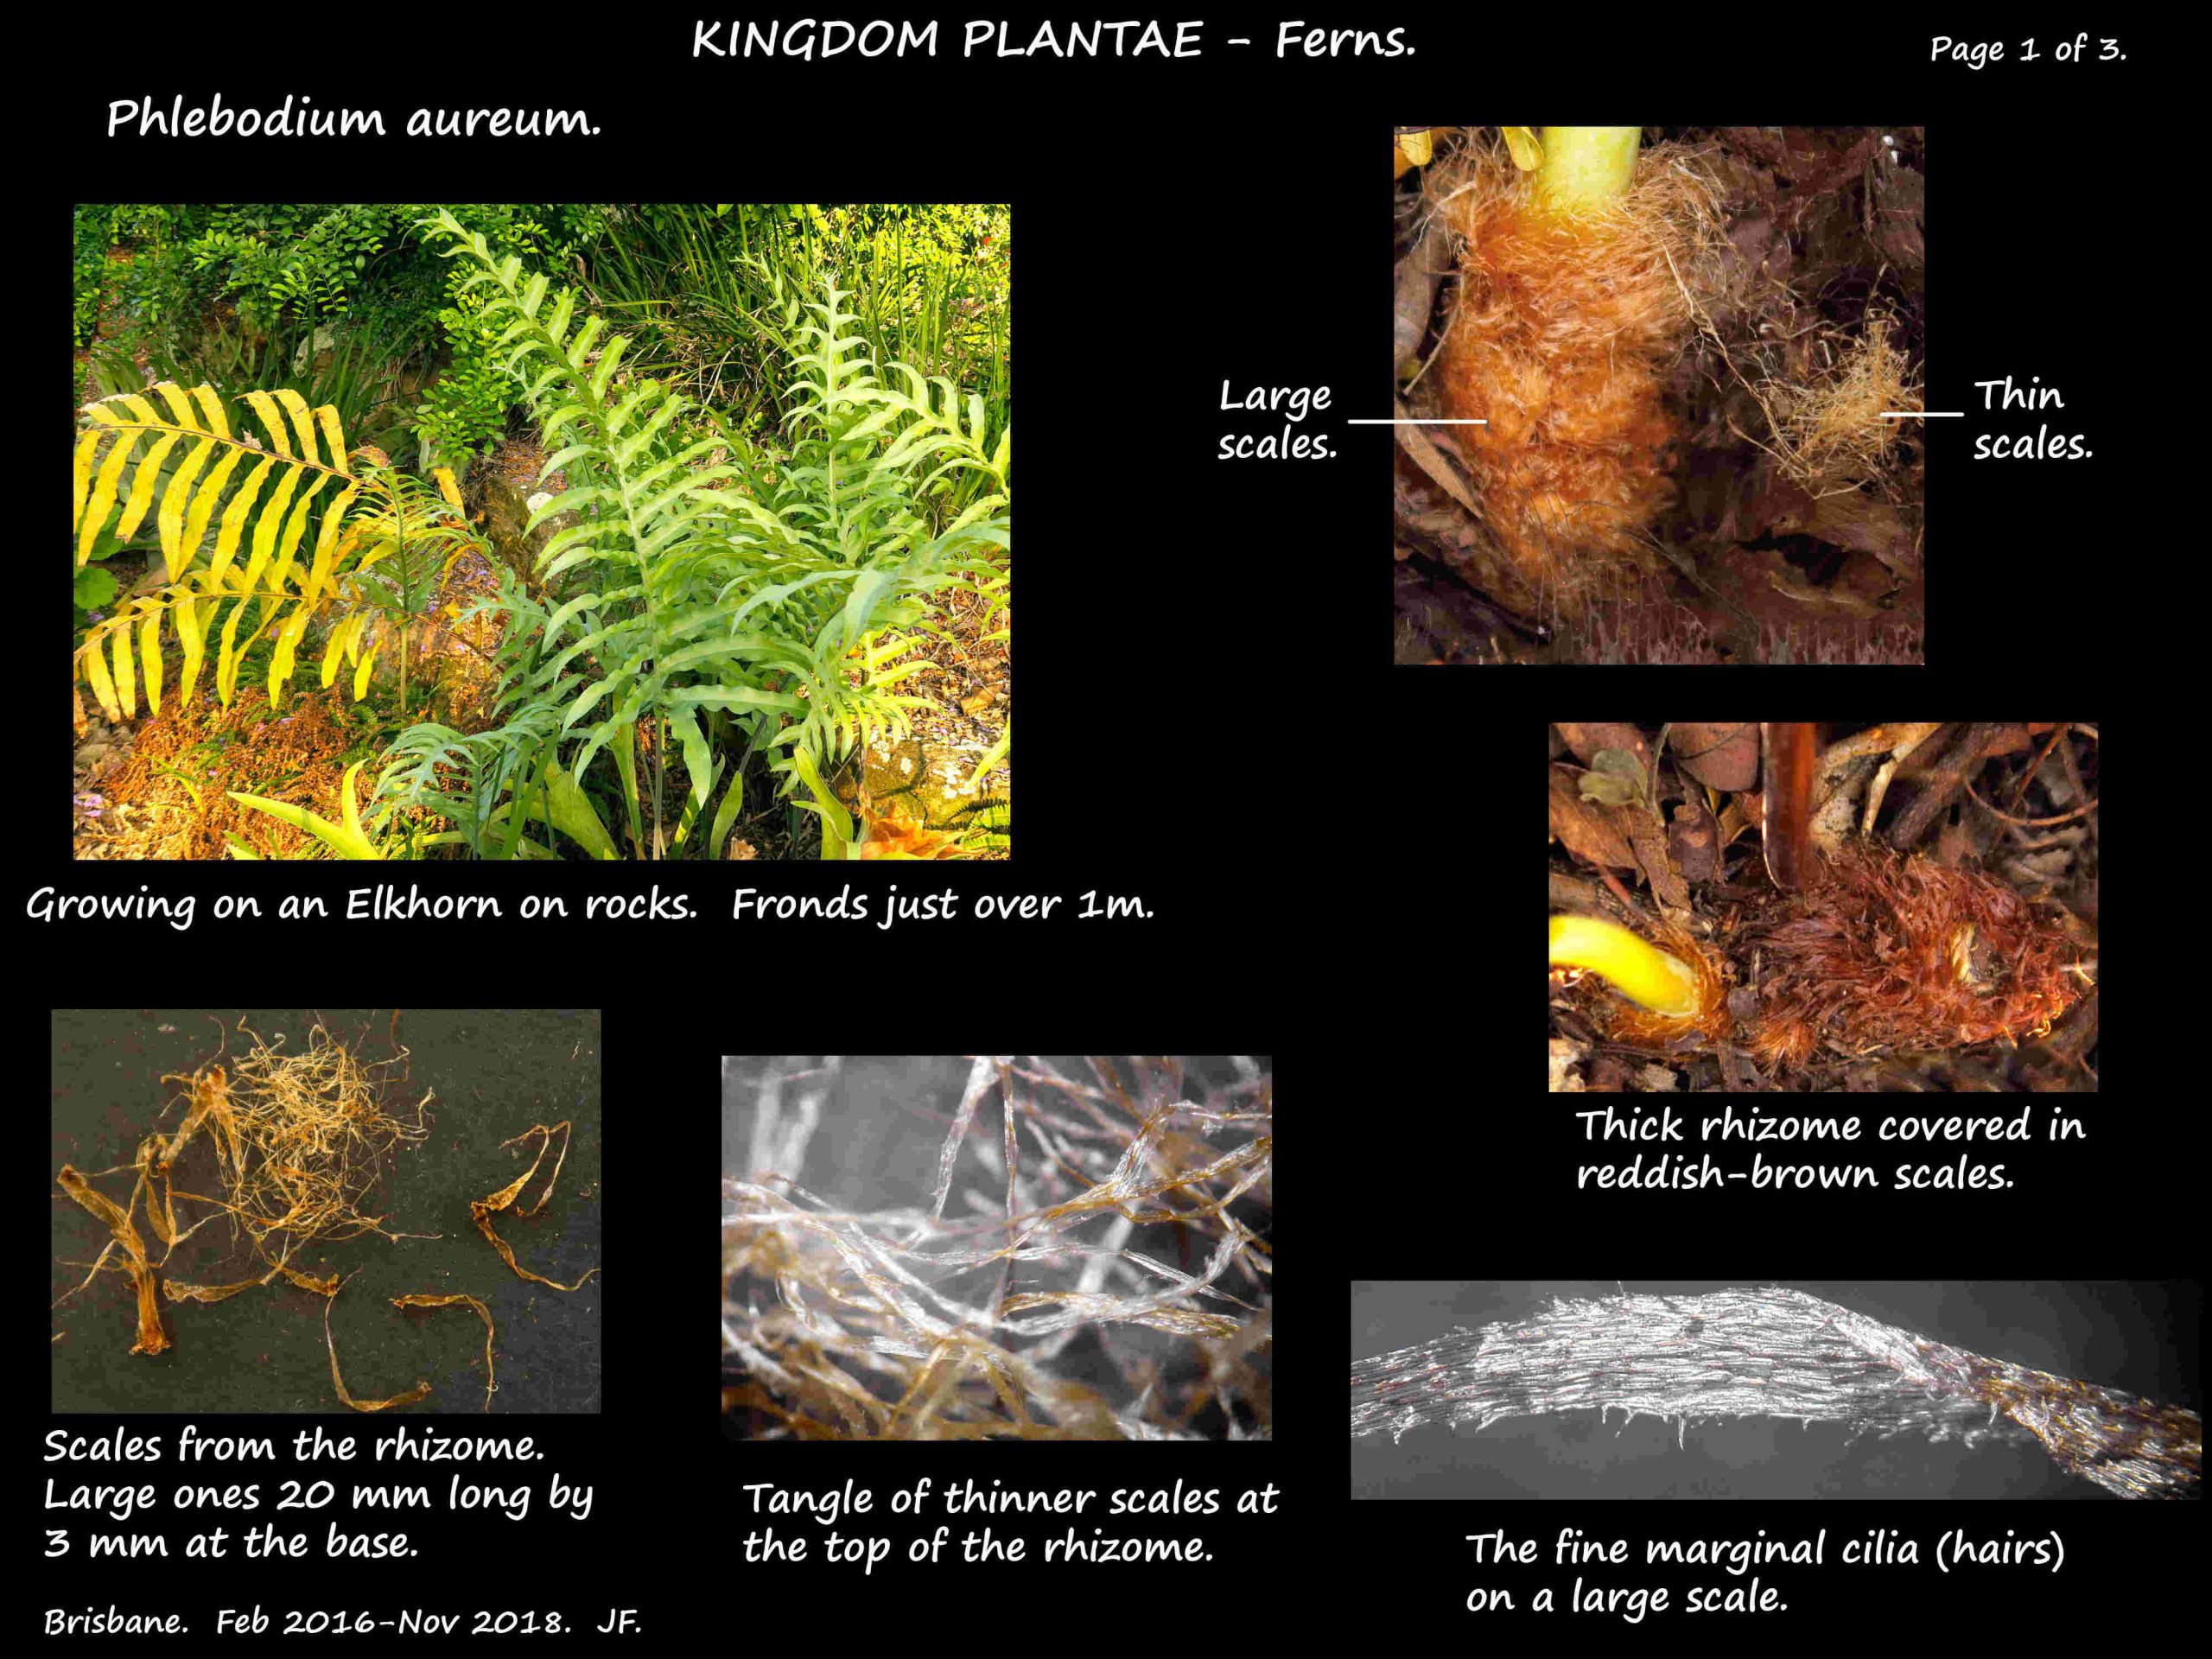 1 Phlebodium aureum plant & scales